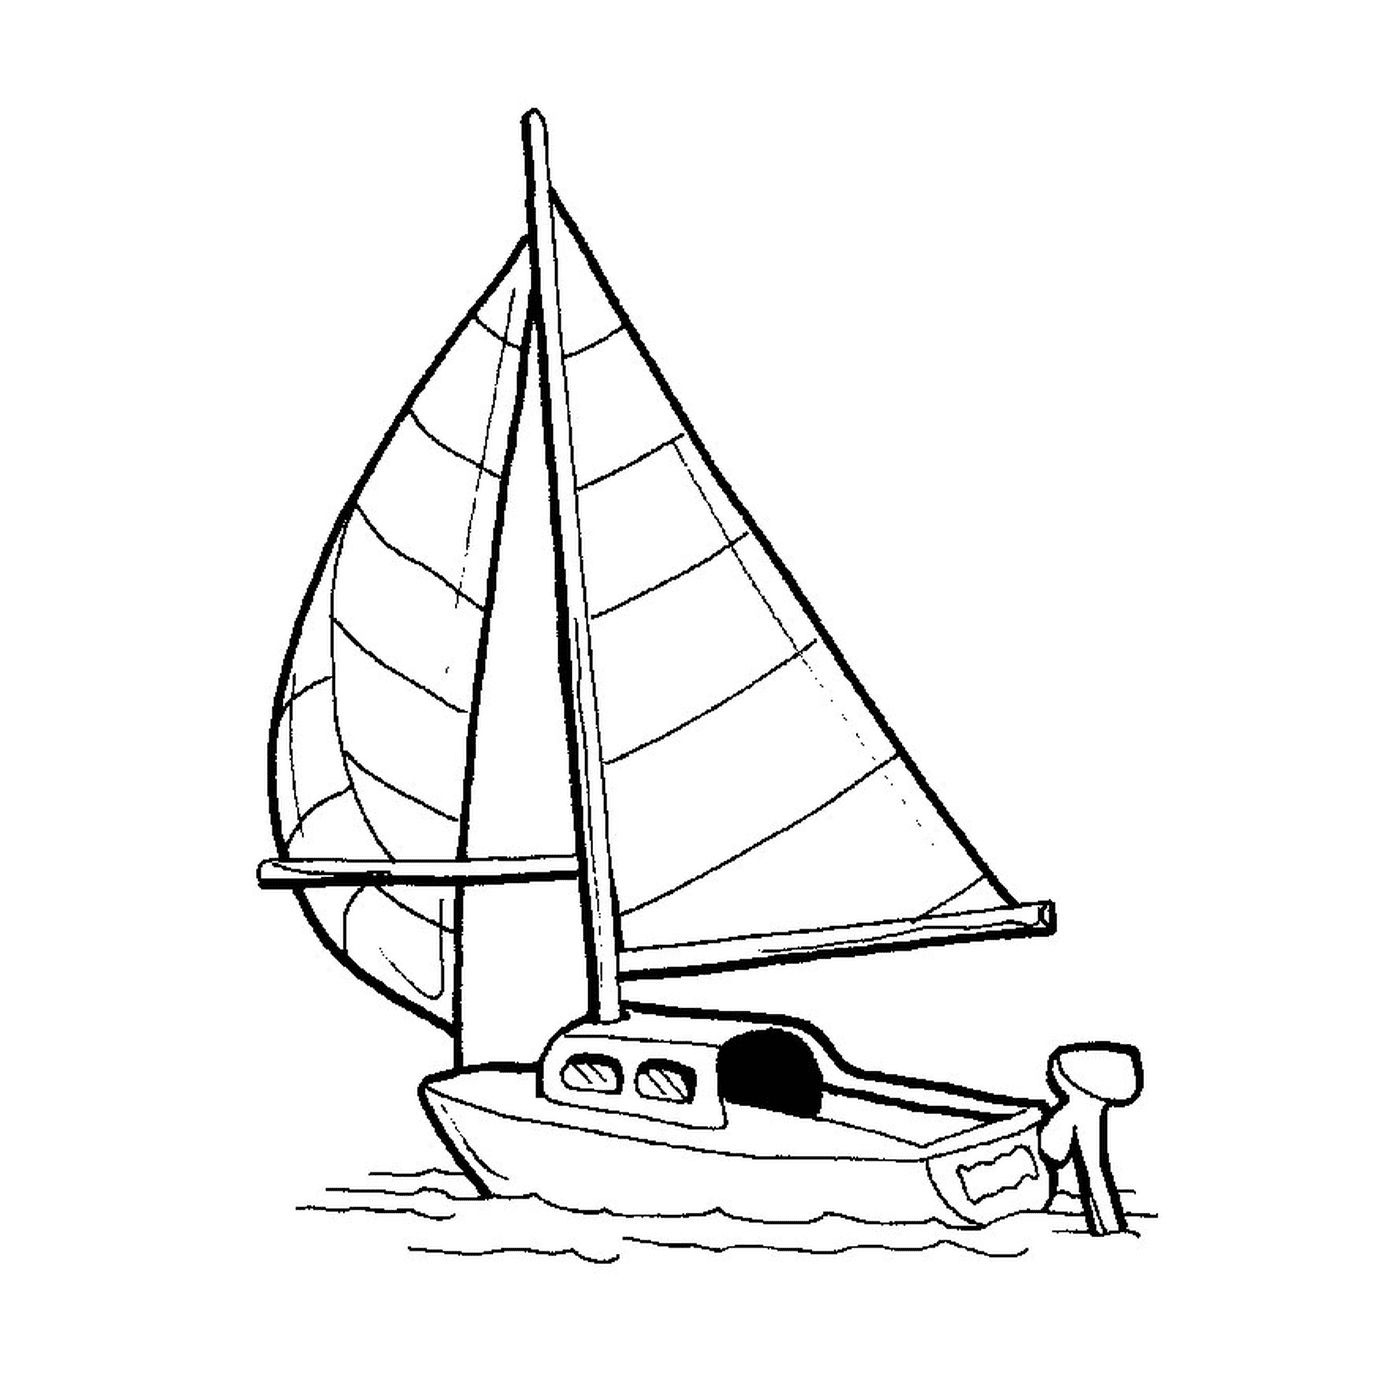   Un voilier est montré dans un dessin 